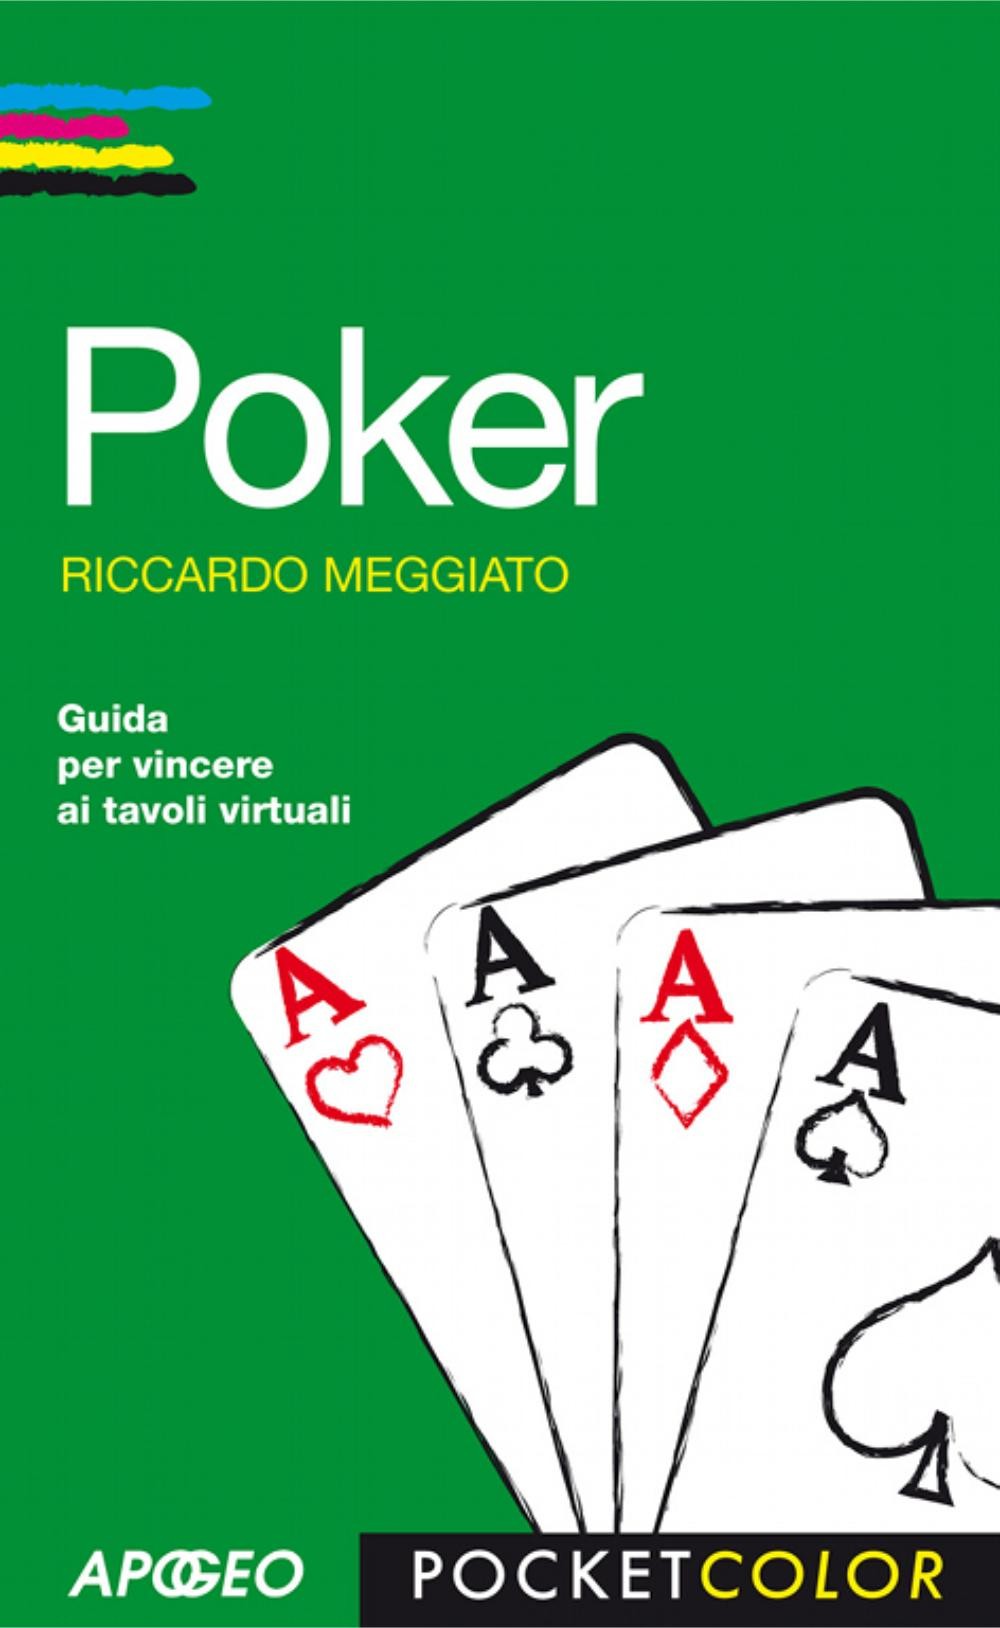 Copertina "Poker" di Riccardo Meggiato